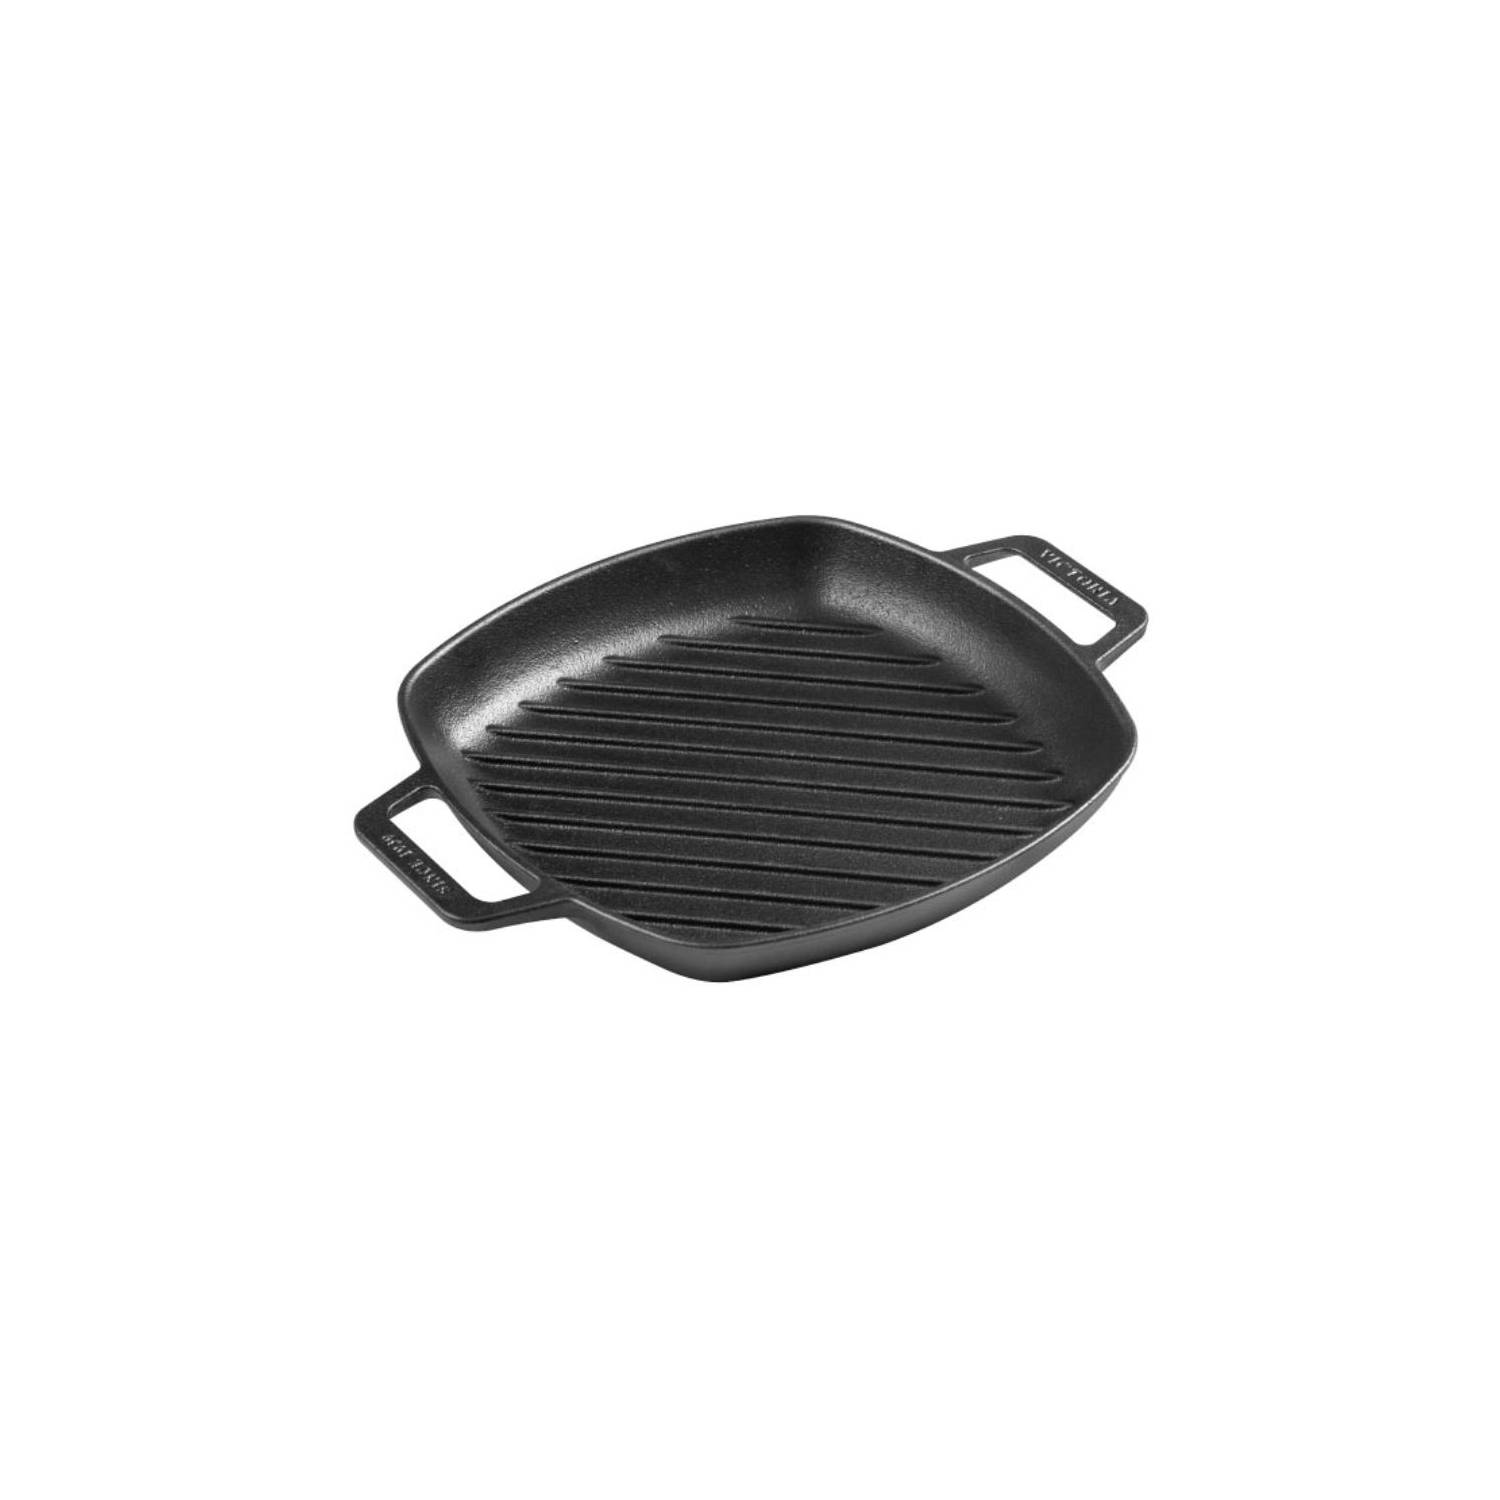 Sartén grill para inducción de hierro fundido 25cm / 2L Victoria